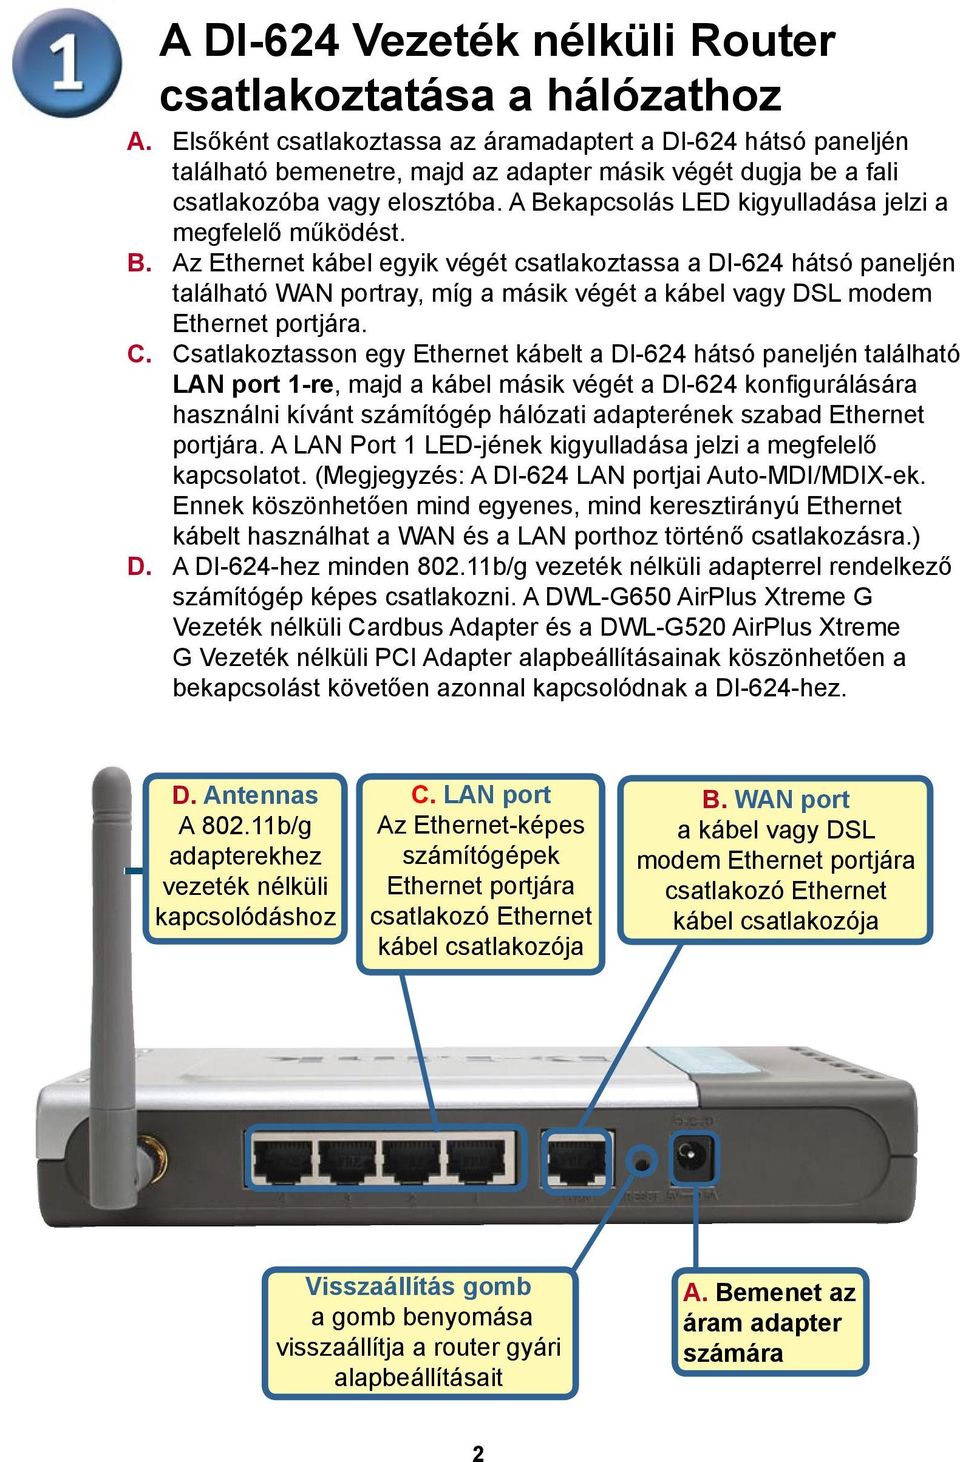 A Bekapcsolás LED kigyulladása jelzi a megfelelő működést. B. Az Ethernet kábel egyik végét csatlakoztassa a DI-624 hátsó paneljén található WAN portray, míg a másik végét a kábel vagy DSL modem Ethernet portjára.